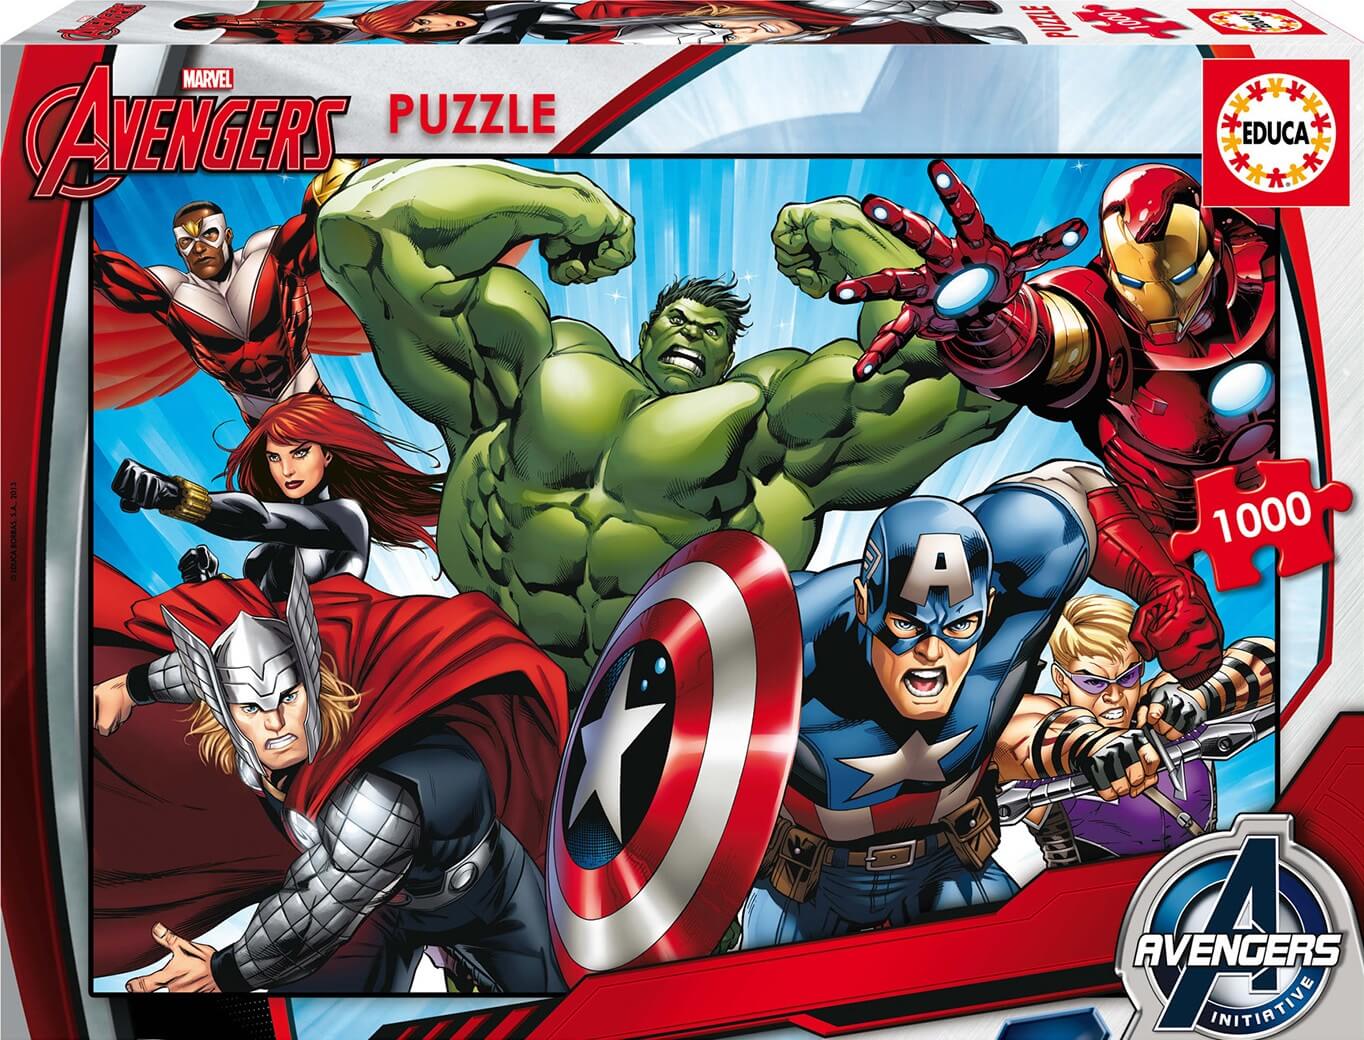 1000 Marvel Avengers